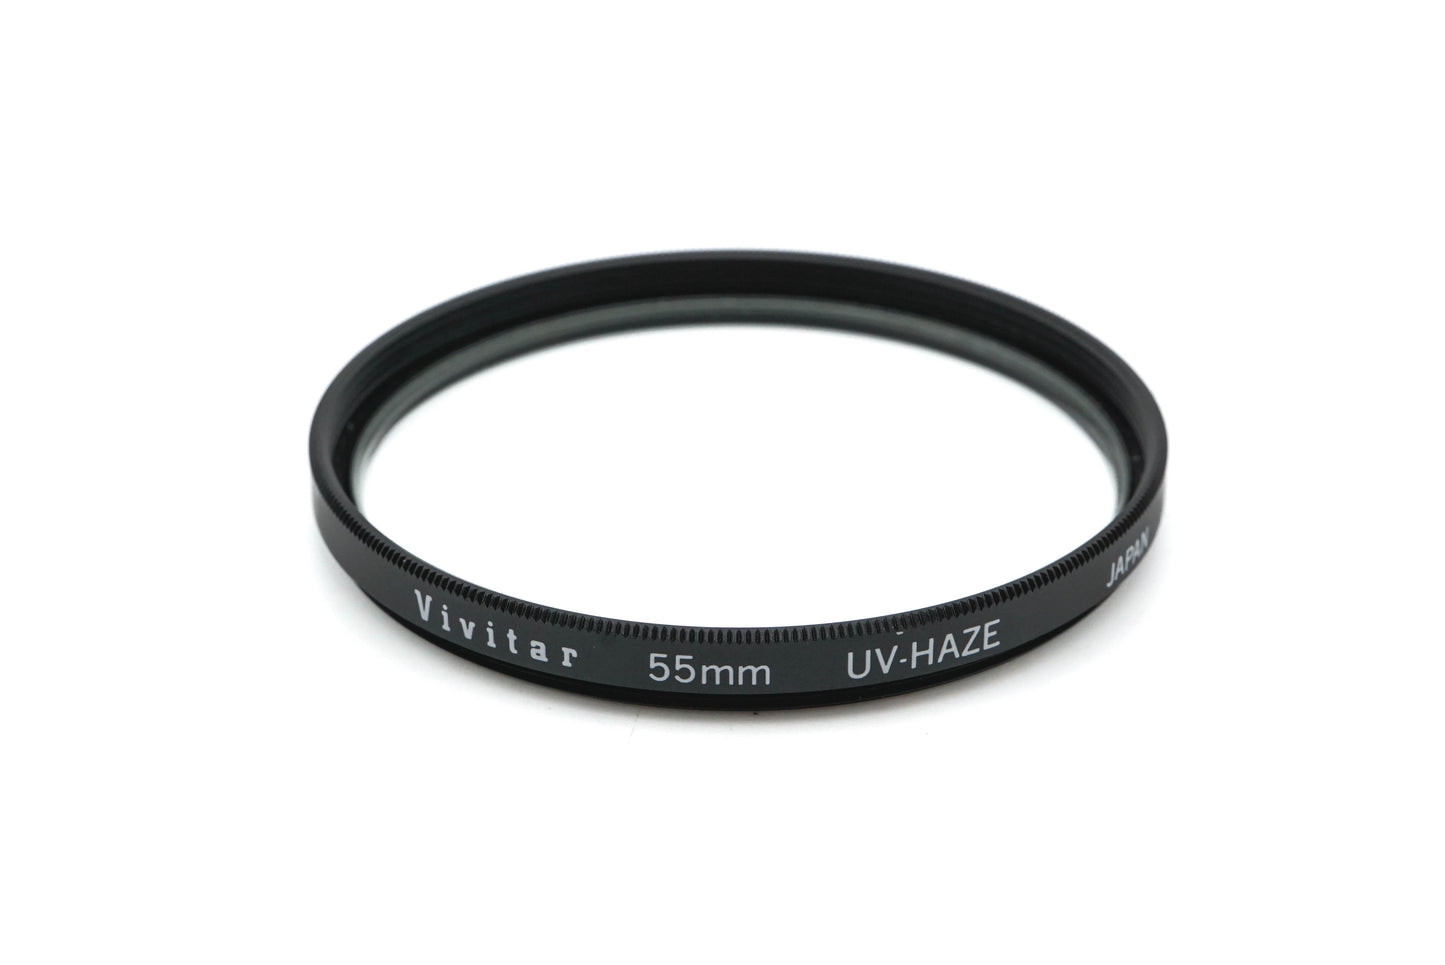 Vivitar 55mm UV-Haze Filter